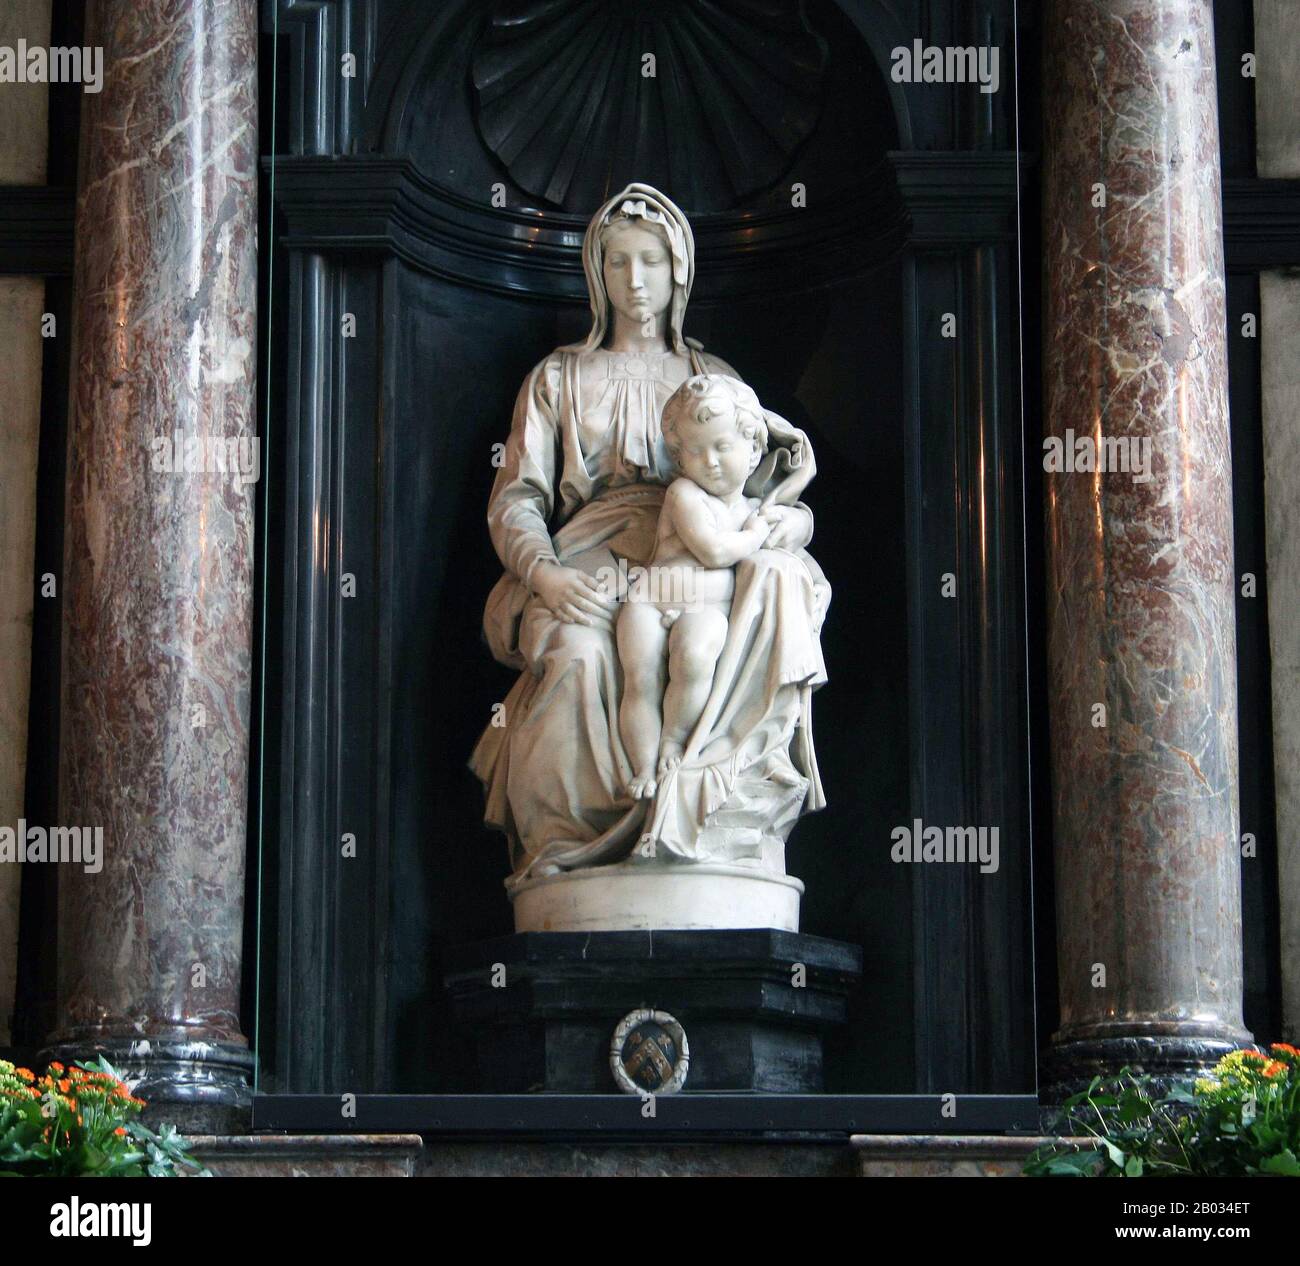 La Madonna di Bruges è una scultura in marmo di Michelangelo di Maria con il Bambino Gesù. Considerato un capolavoro, fu rubato dalle forze tedesche come parte del loro programma 'Nazi Plunder' nel 1944. Fu recuperato un anno dopo dalle forze alleate presso la miniera di sale di Altaussee, nel centro dell'Austria, e tornò in sicurezza a Bruges, dove rimane oggi. Foto Stock